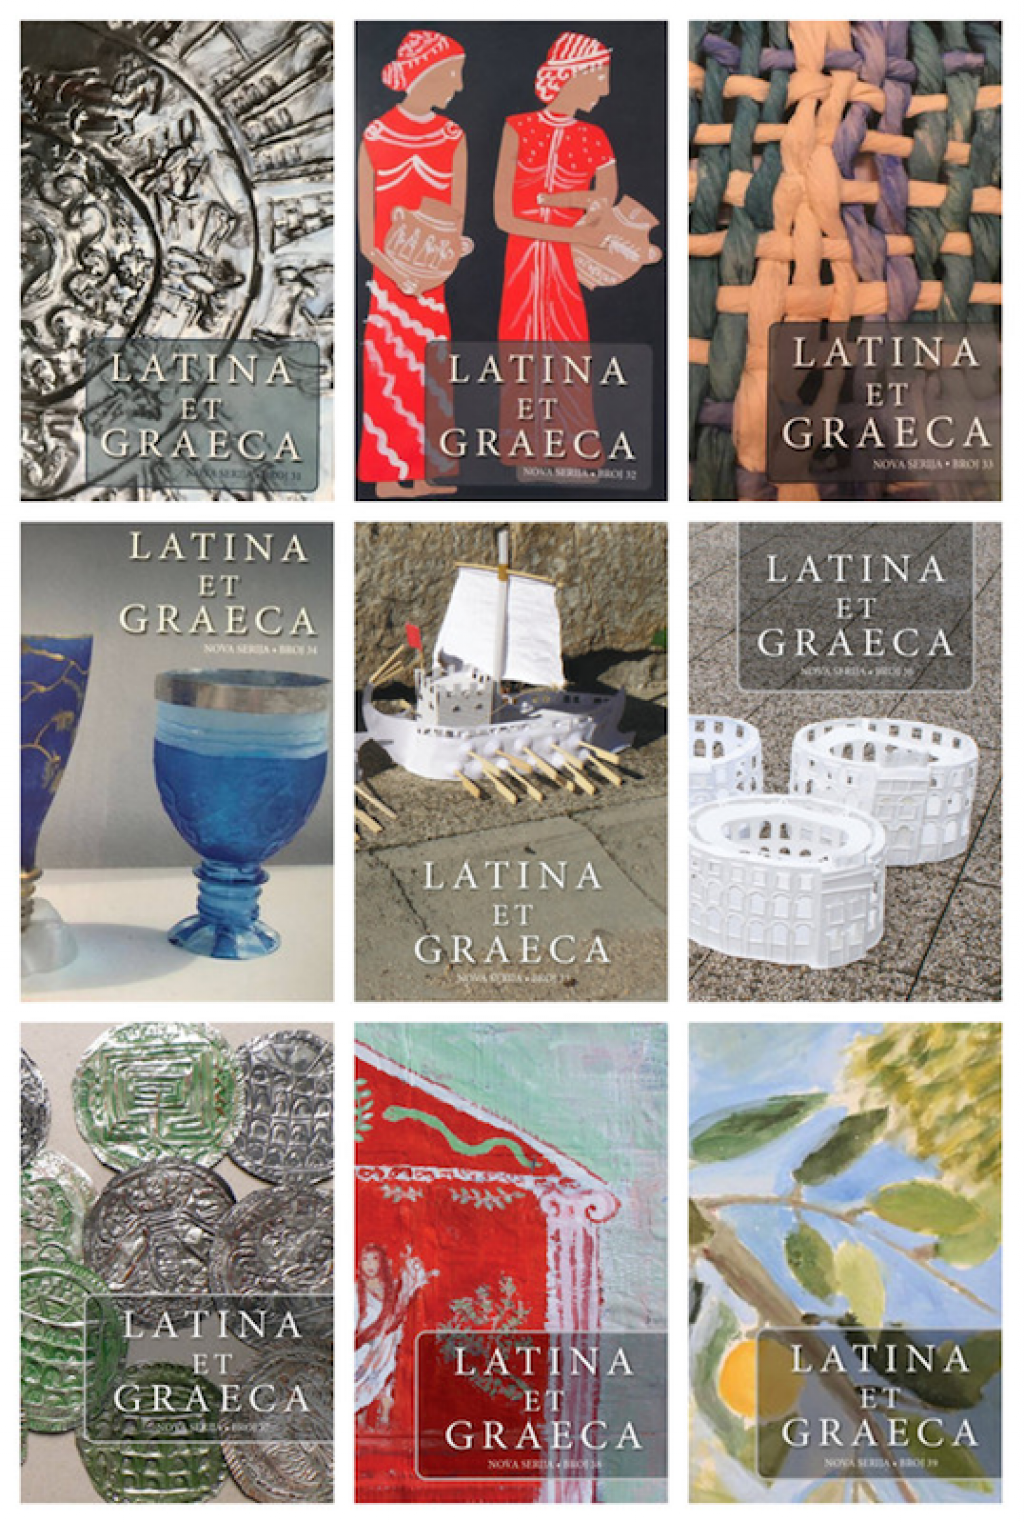 &lt;p&gt;Obilježavanje pedeset godina časopisa ”Latina et Graeca” u Znanstvenoj knjižnici Dubrovnik&lt;/p&gt;